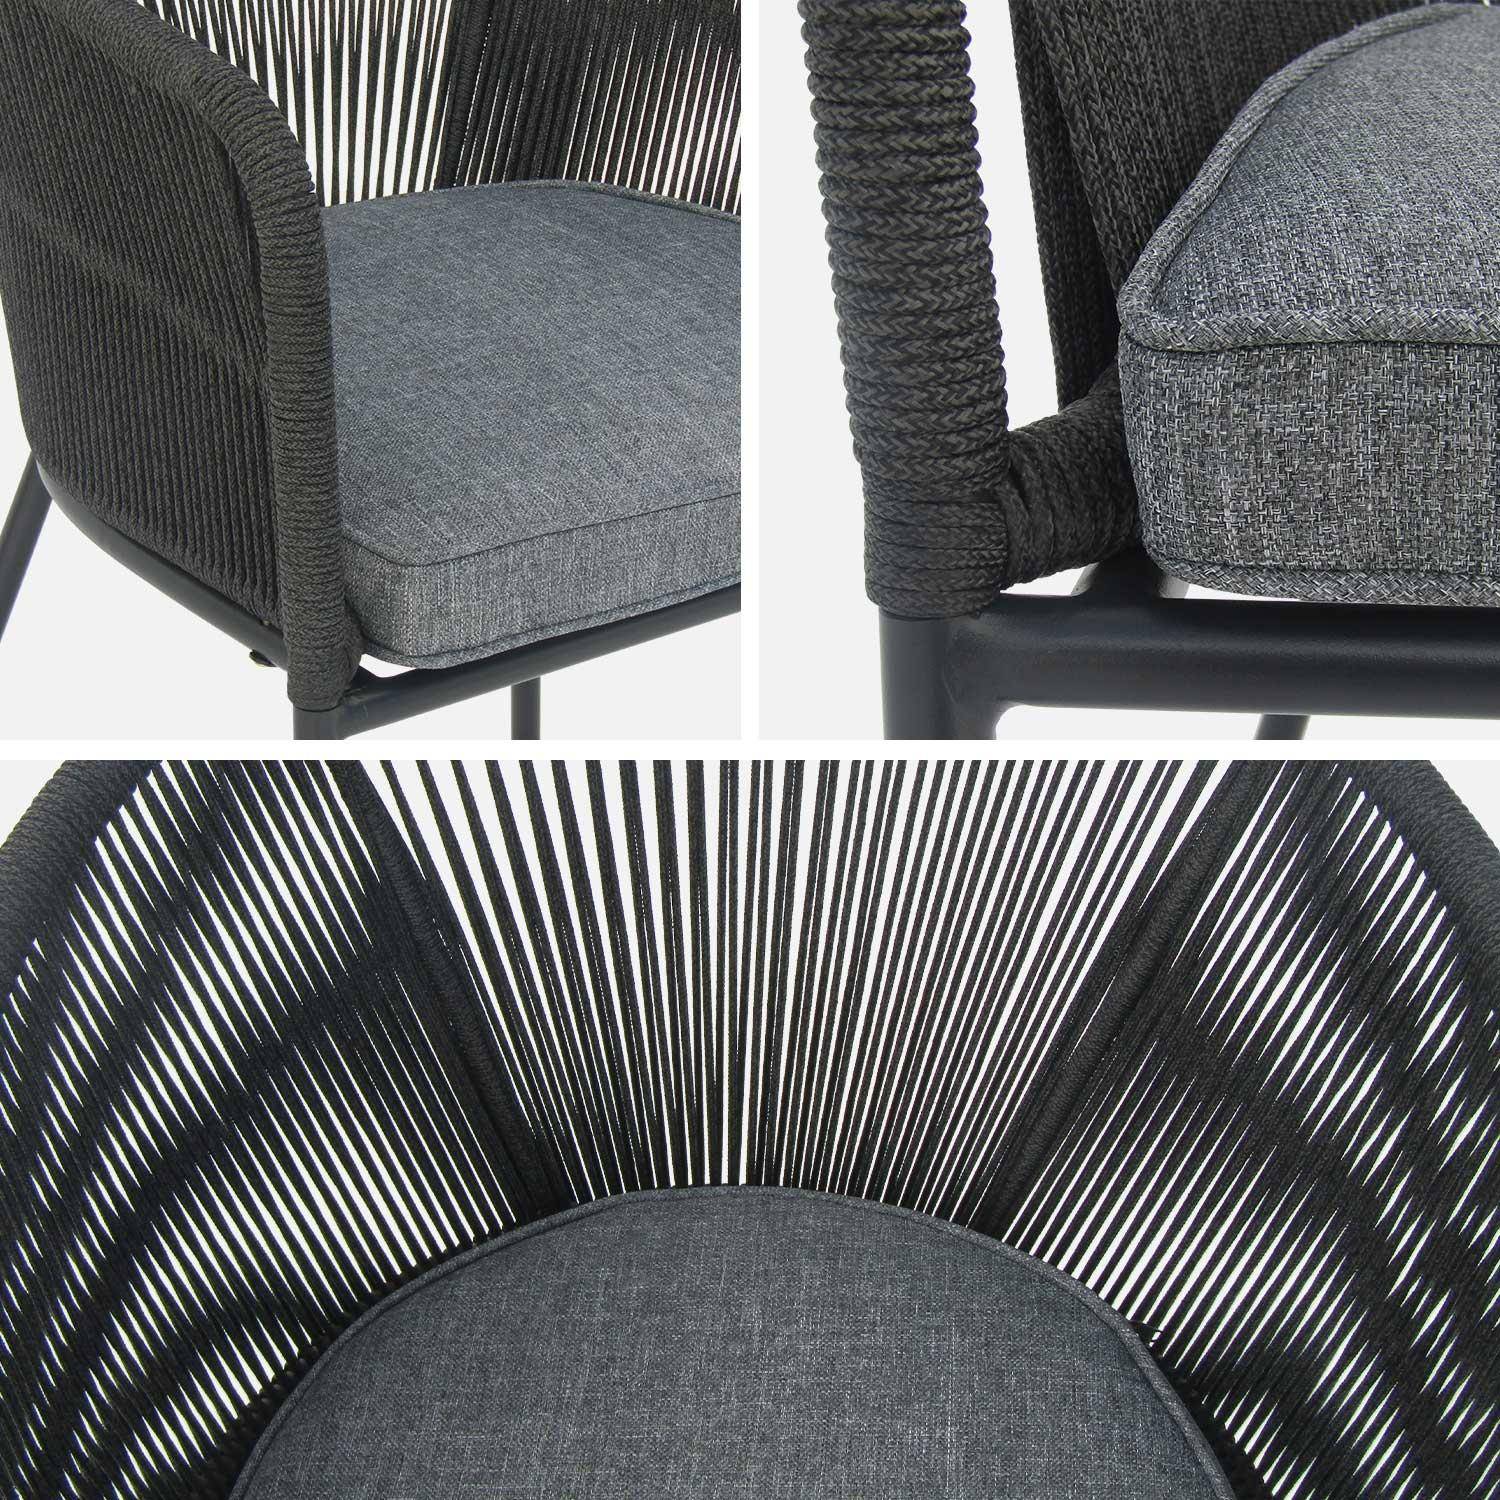 Lote de 4 sillones de jardín de cuerda negra y acero galvanizado, cojines grises,sweeek,Photo4